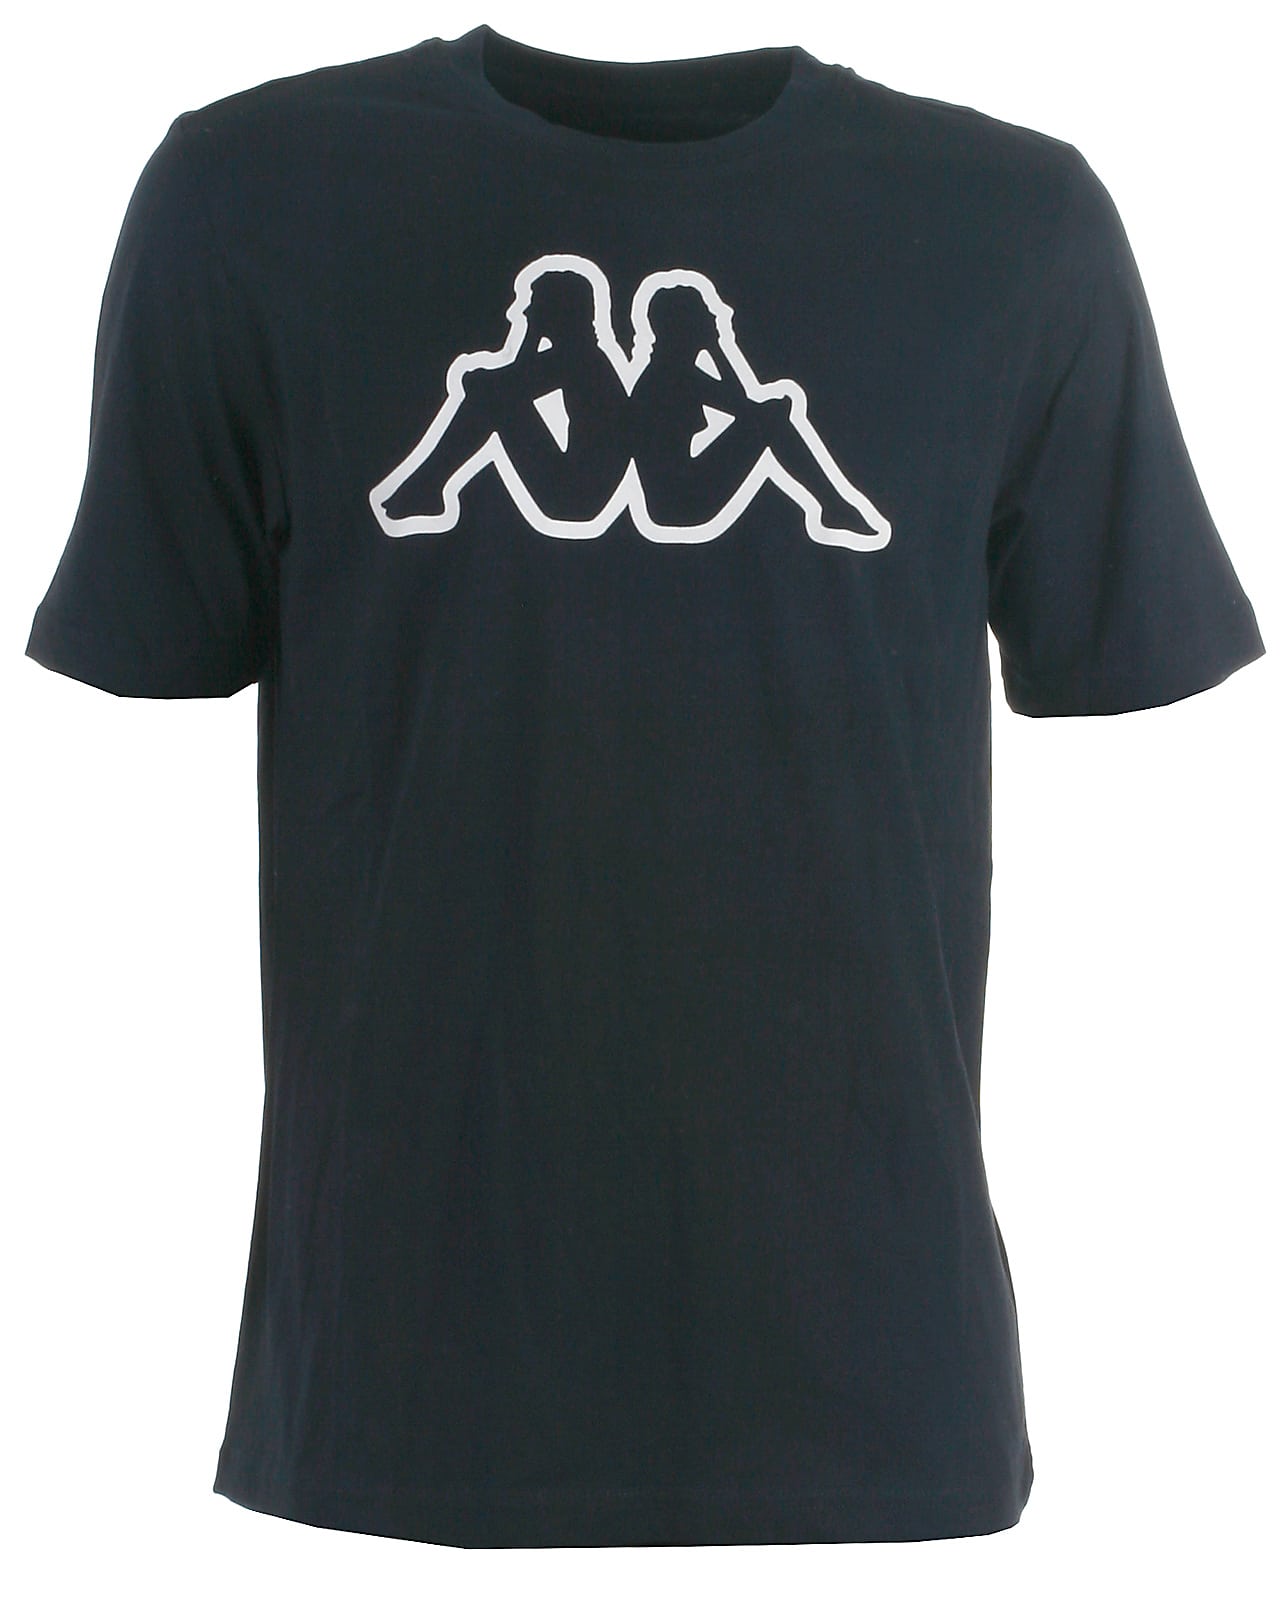 Kappa t-shirt s/s, Logo, navy - 128,8år